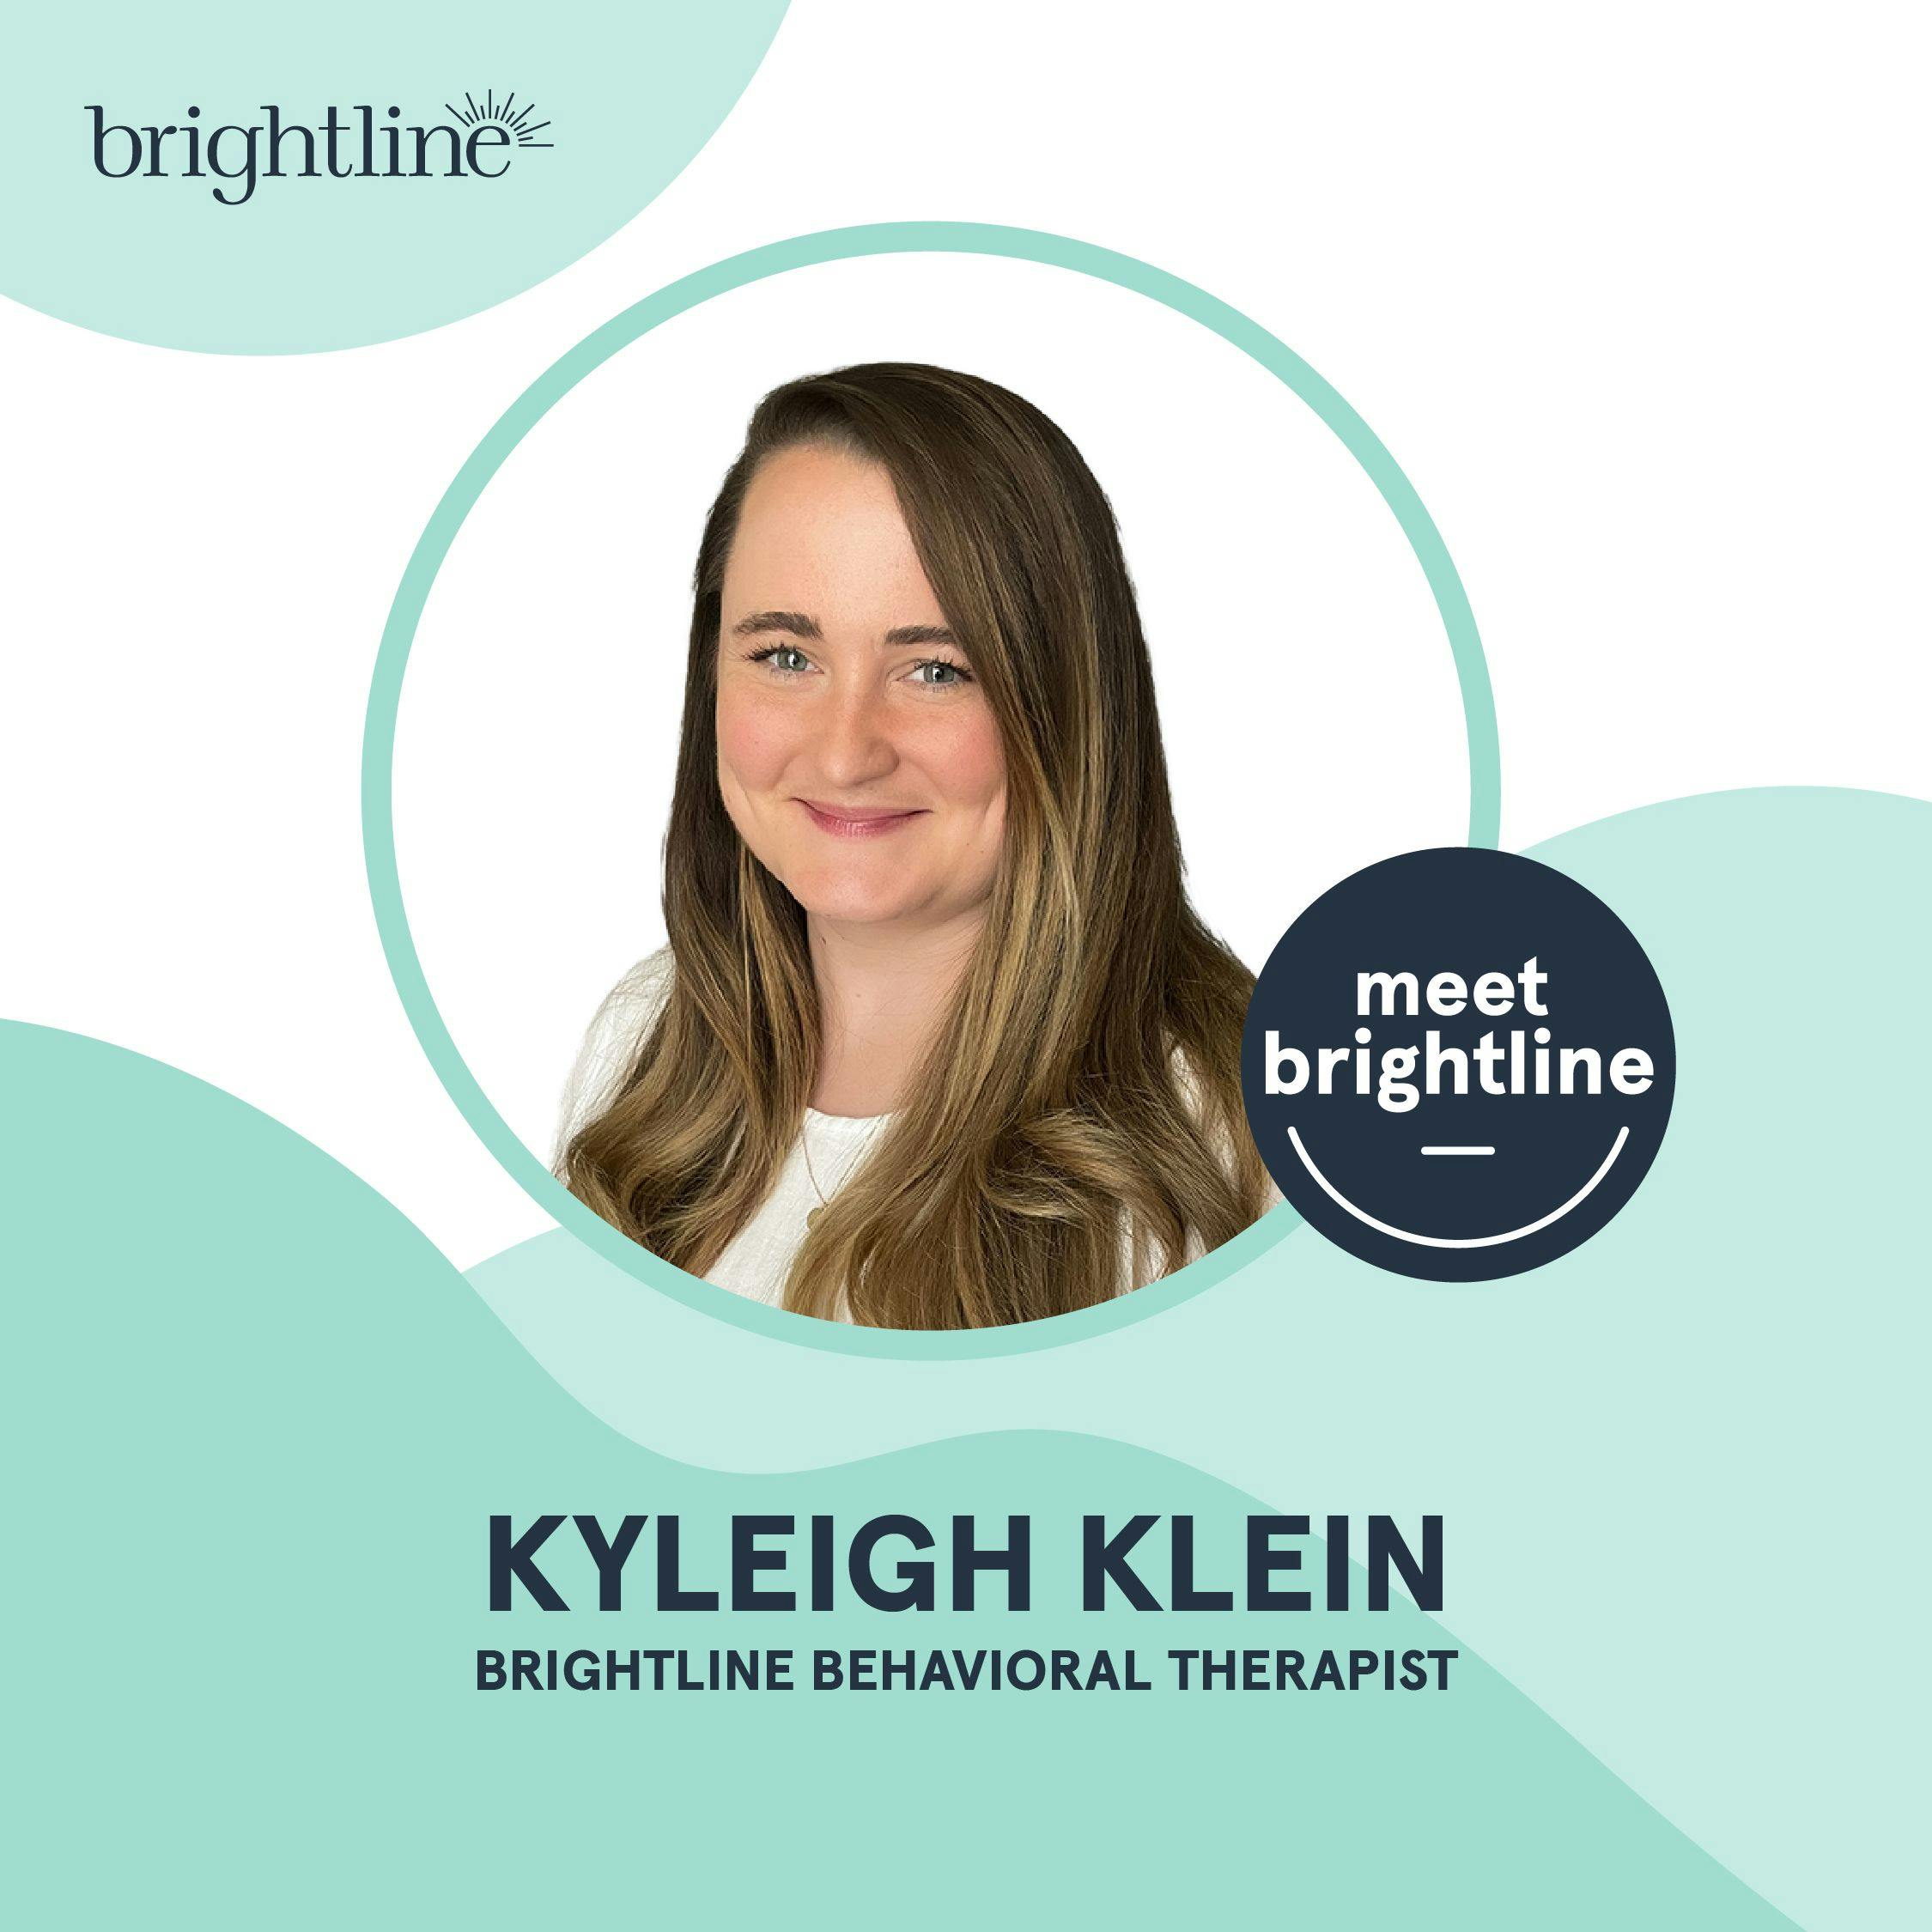 Meet Kyleigh Klein, LMHC, MA